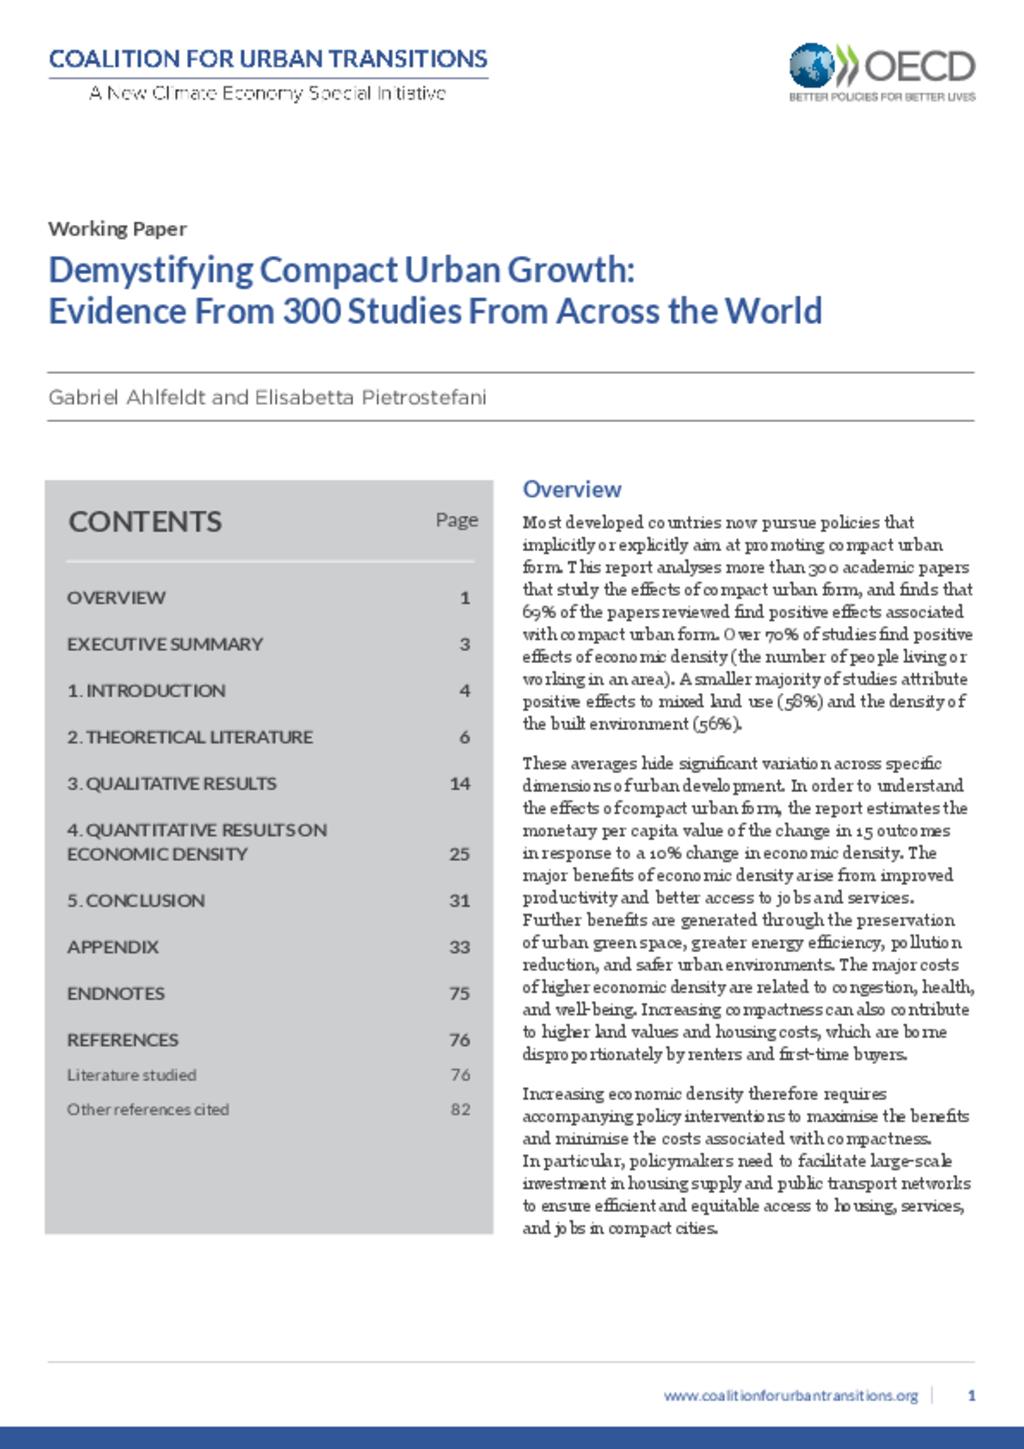 Demystifying urban growth